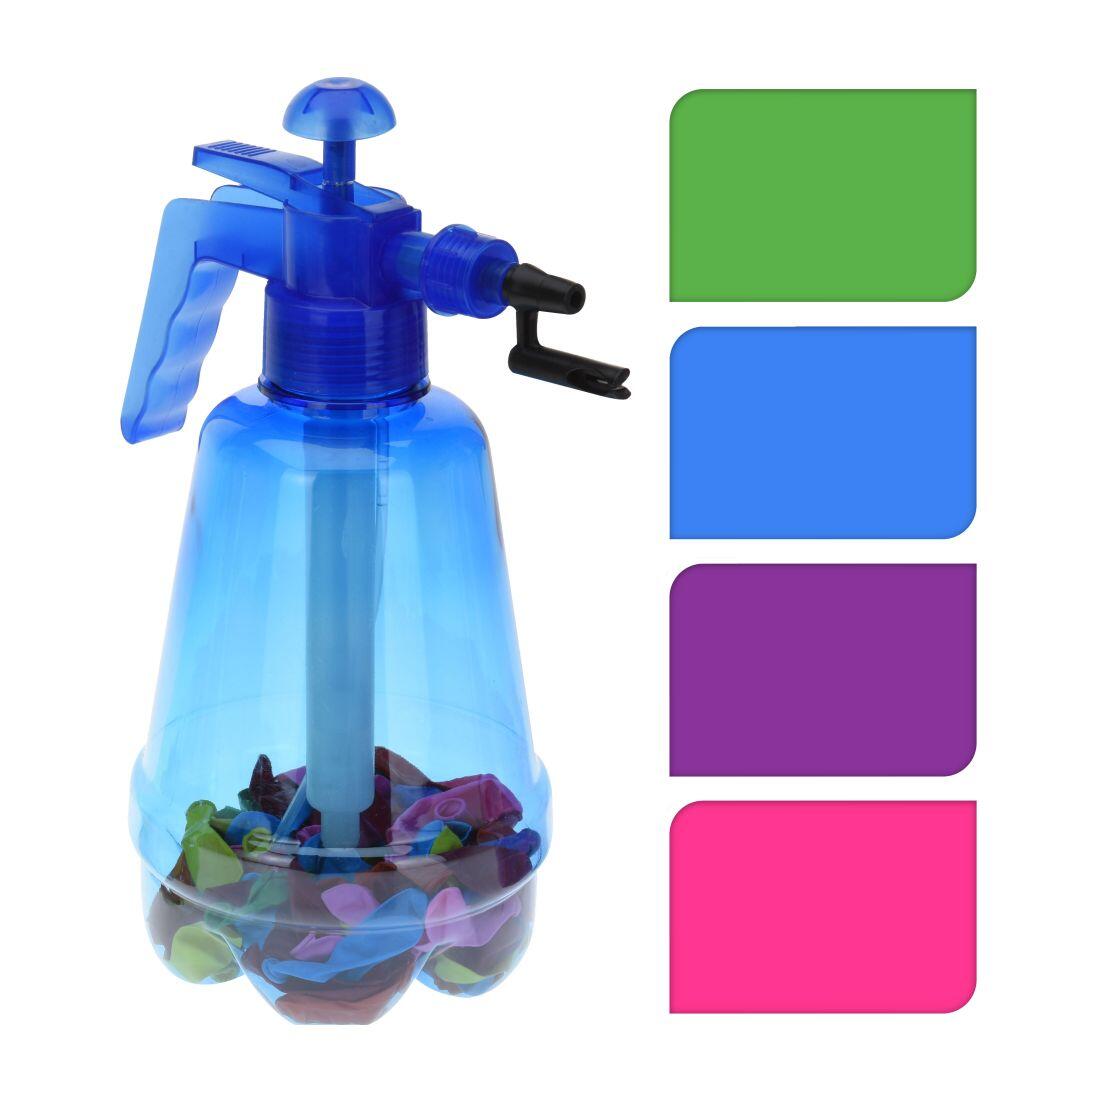 pumpička na vodní bomby 1,7l + balonky (100ks) mix barev 0.2 Kg MAXMIX Sklad14 385997 56